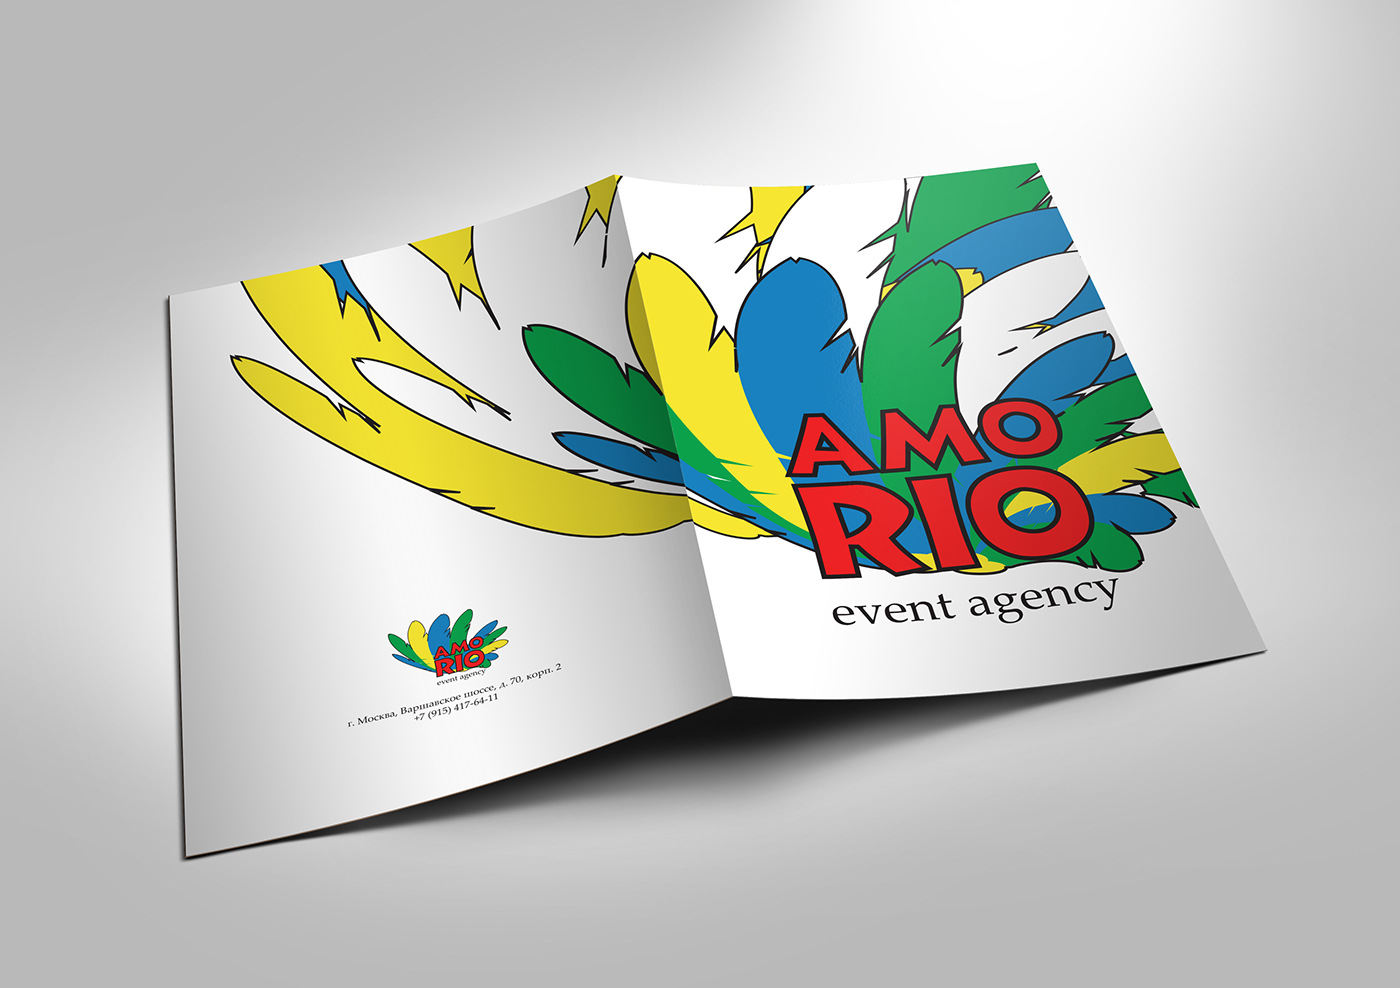 Event agency rio Rio de Janeiro Brasil Brazil brand identity